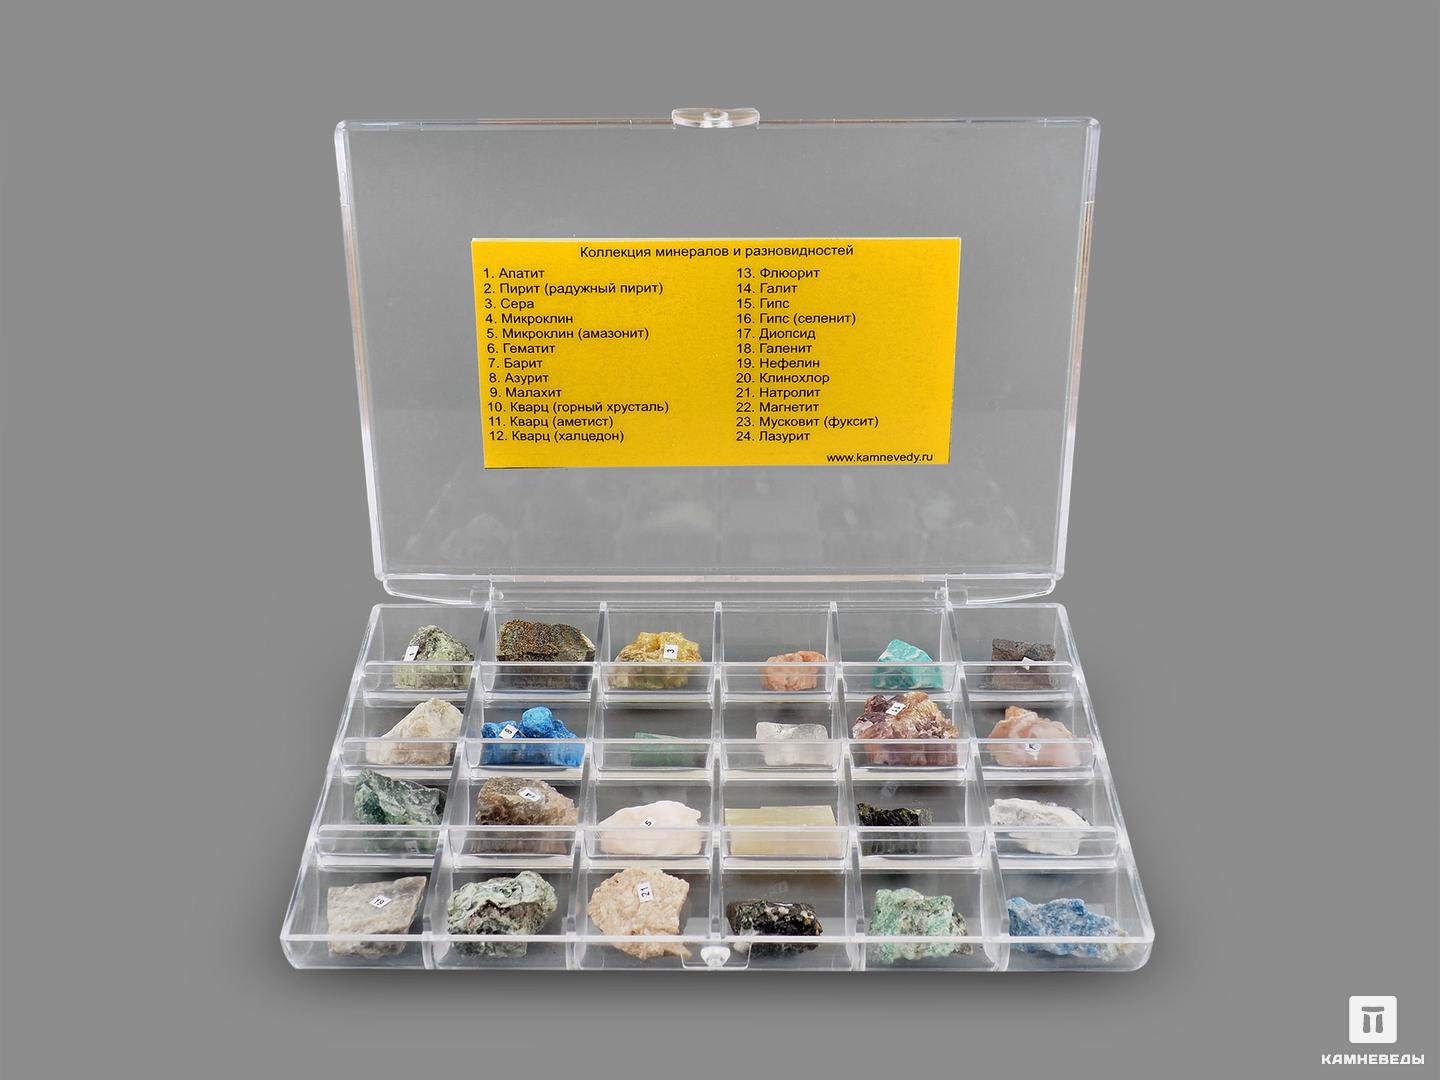 Коллекция минералов и разновидностей (24 образца) коллекция наклеек влад а4